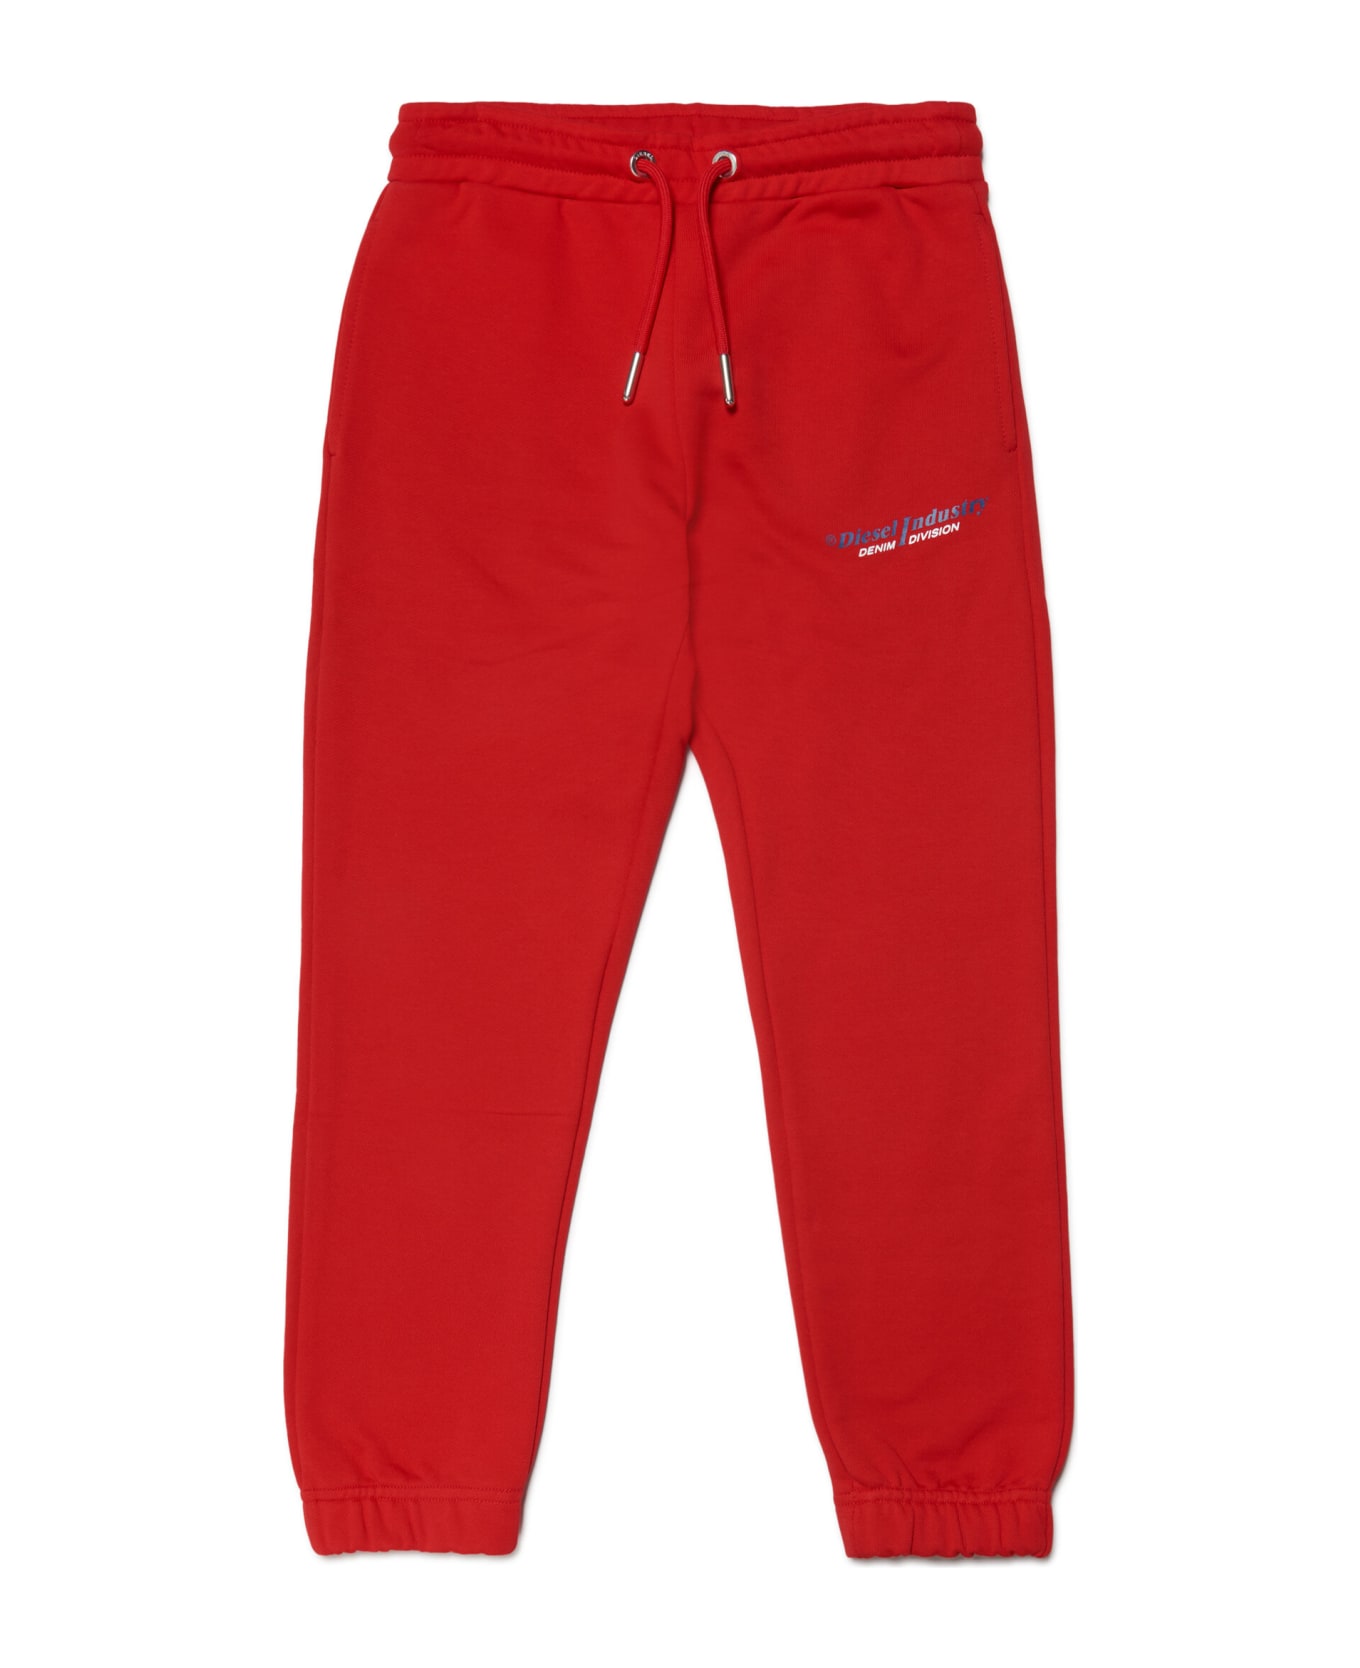 Diesel Pvenusind Trousers gris Diesel Red Fleece Pants With Diesel Industry Logo - Carnation red